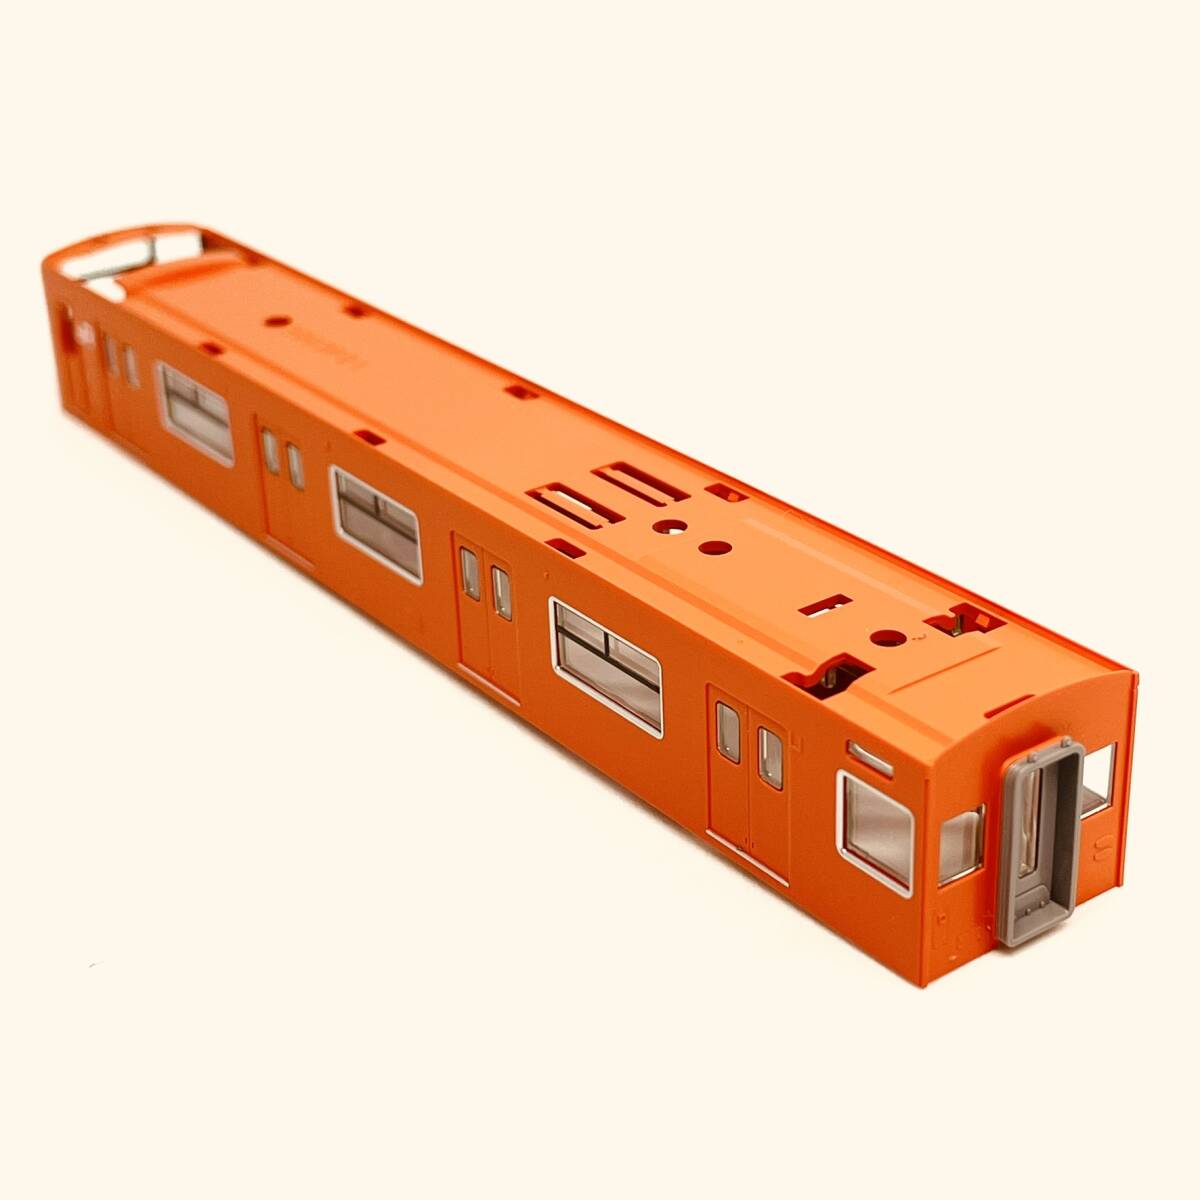 TOMIX クハ200 30N更新車/オレンジ色 ボディ+ガラス 1両分入り 98843 JR 201系通勤電車(JR西日本30N更新車・オレンジ)セットからのバラシ_別の角度からの画像です。